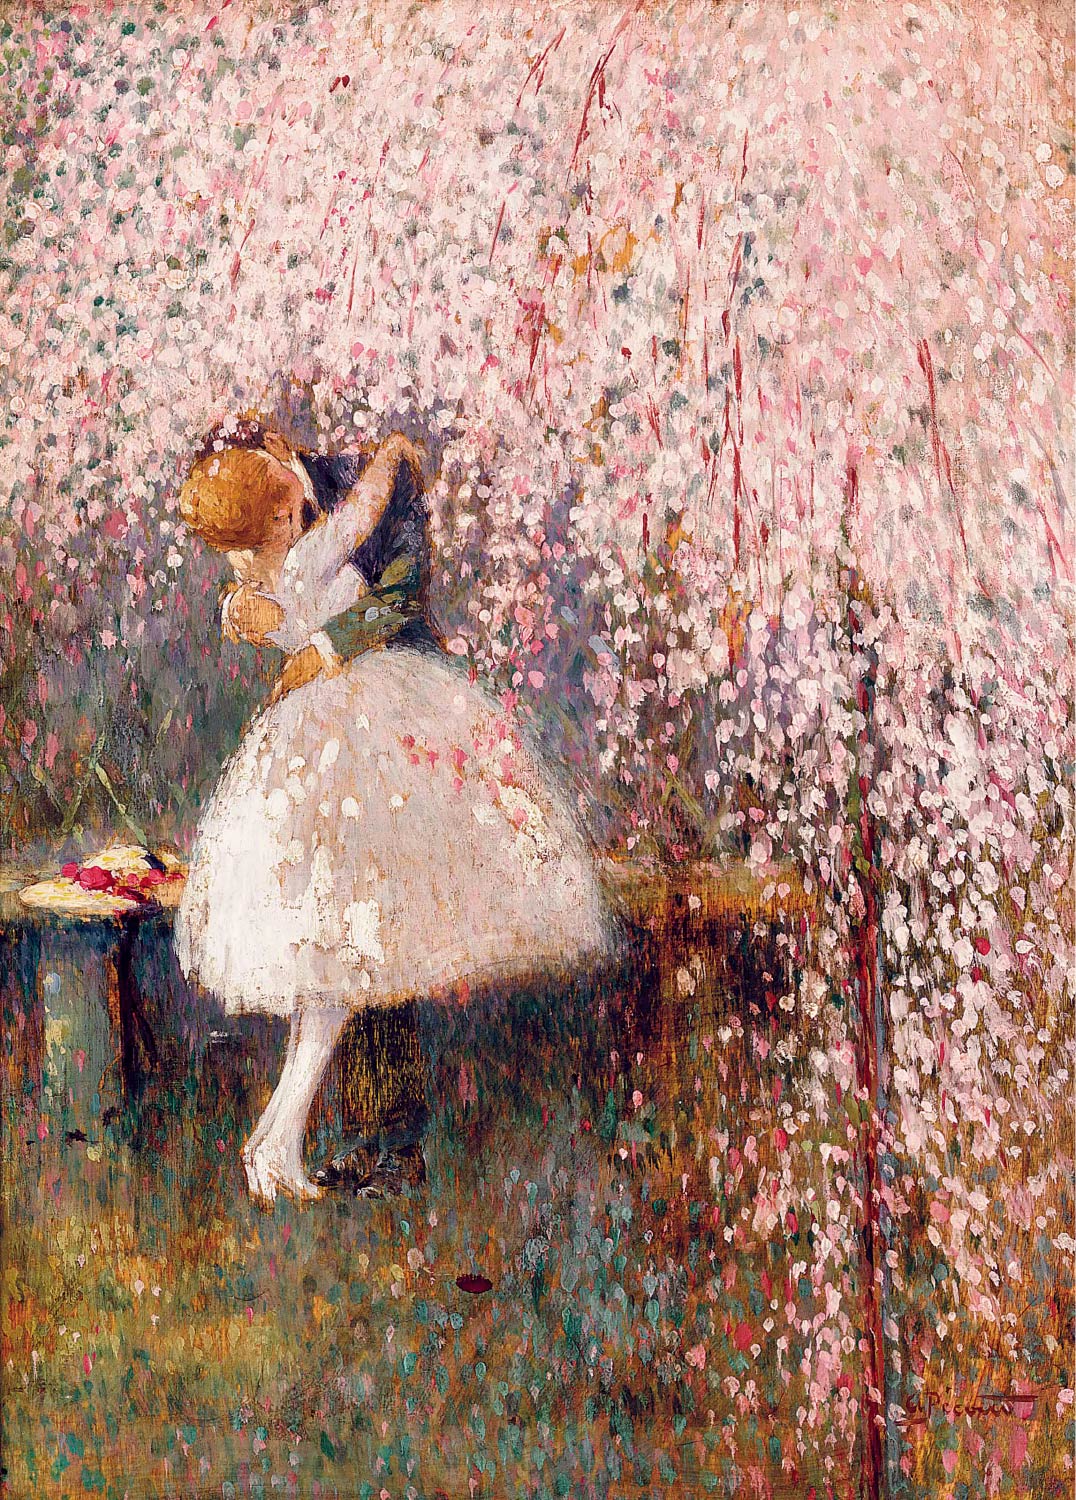 【無料壁紙】ジョルジュ・ピカール「桜の木の下のロマンス (1857-1943)」 / Georges Picard_Romance under the blossom tree (1857-1943)